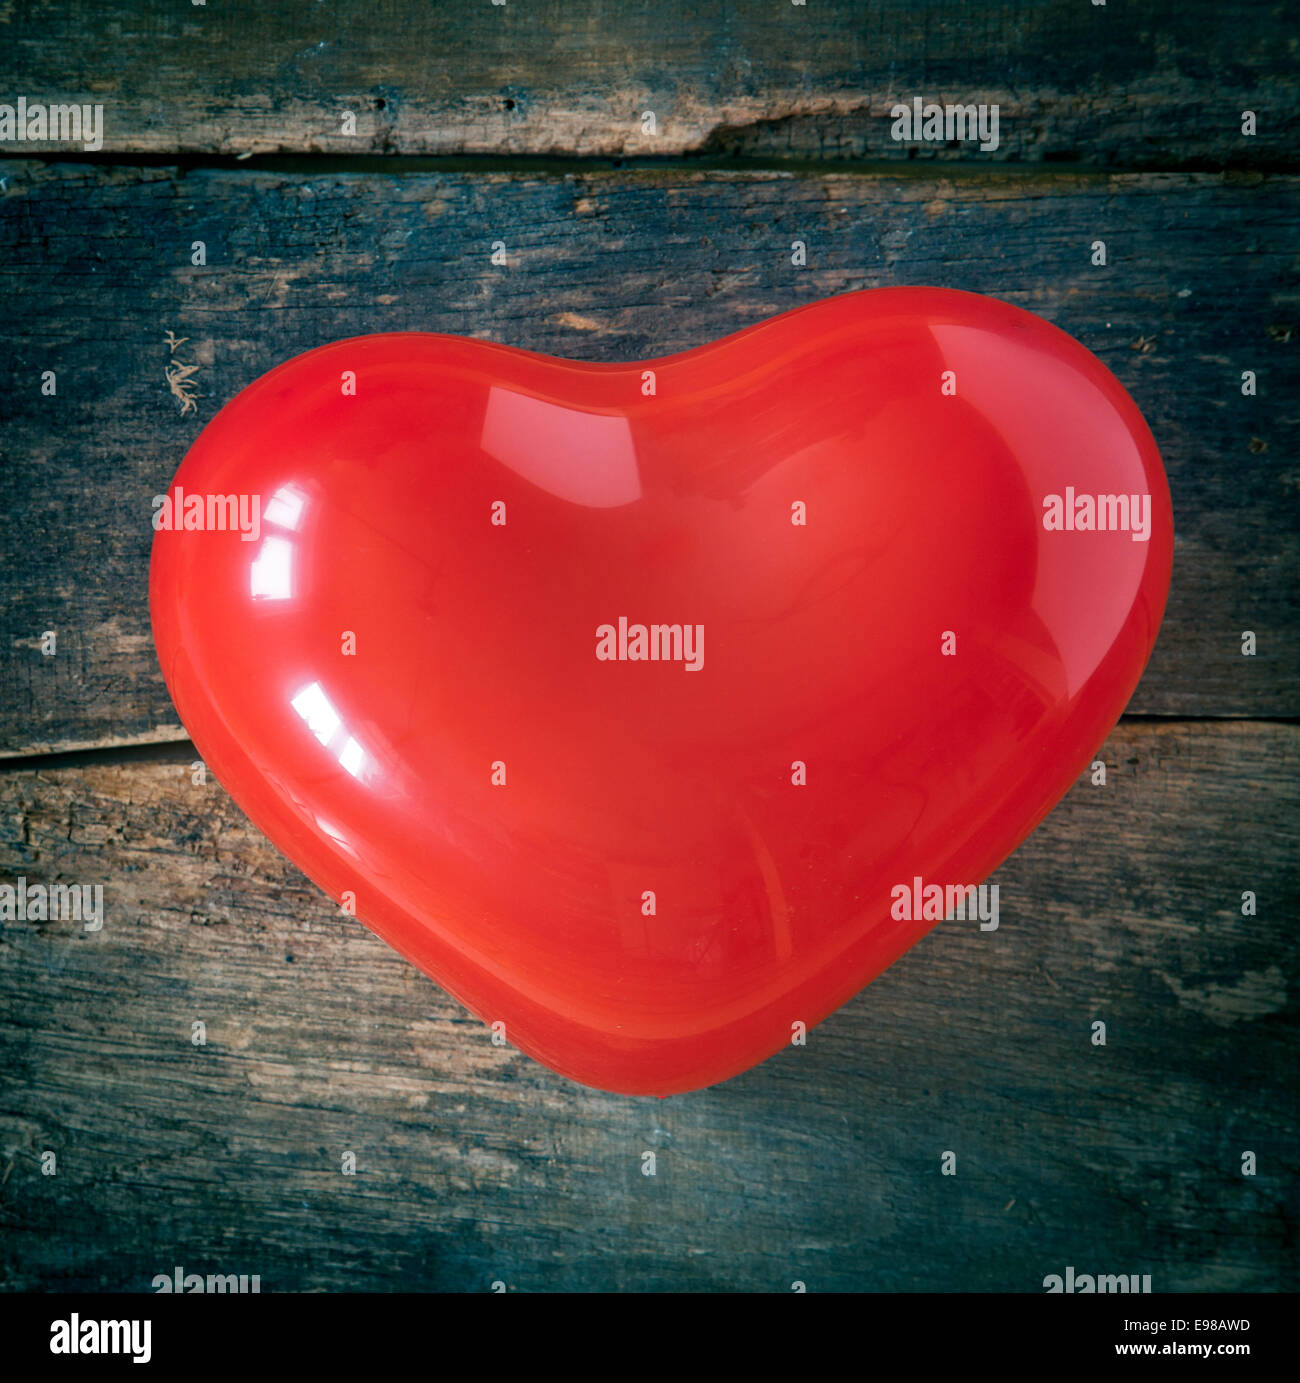 Roten romantische Valentinstag oder Weihnachten Herz für den Versand besondere festliche Grüße an ein Schatz oder geliebten auf einen strukturierten Hintergrund aus Holz Stockfoto